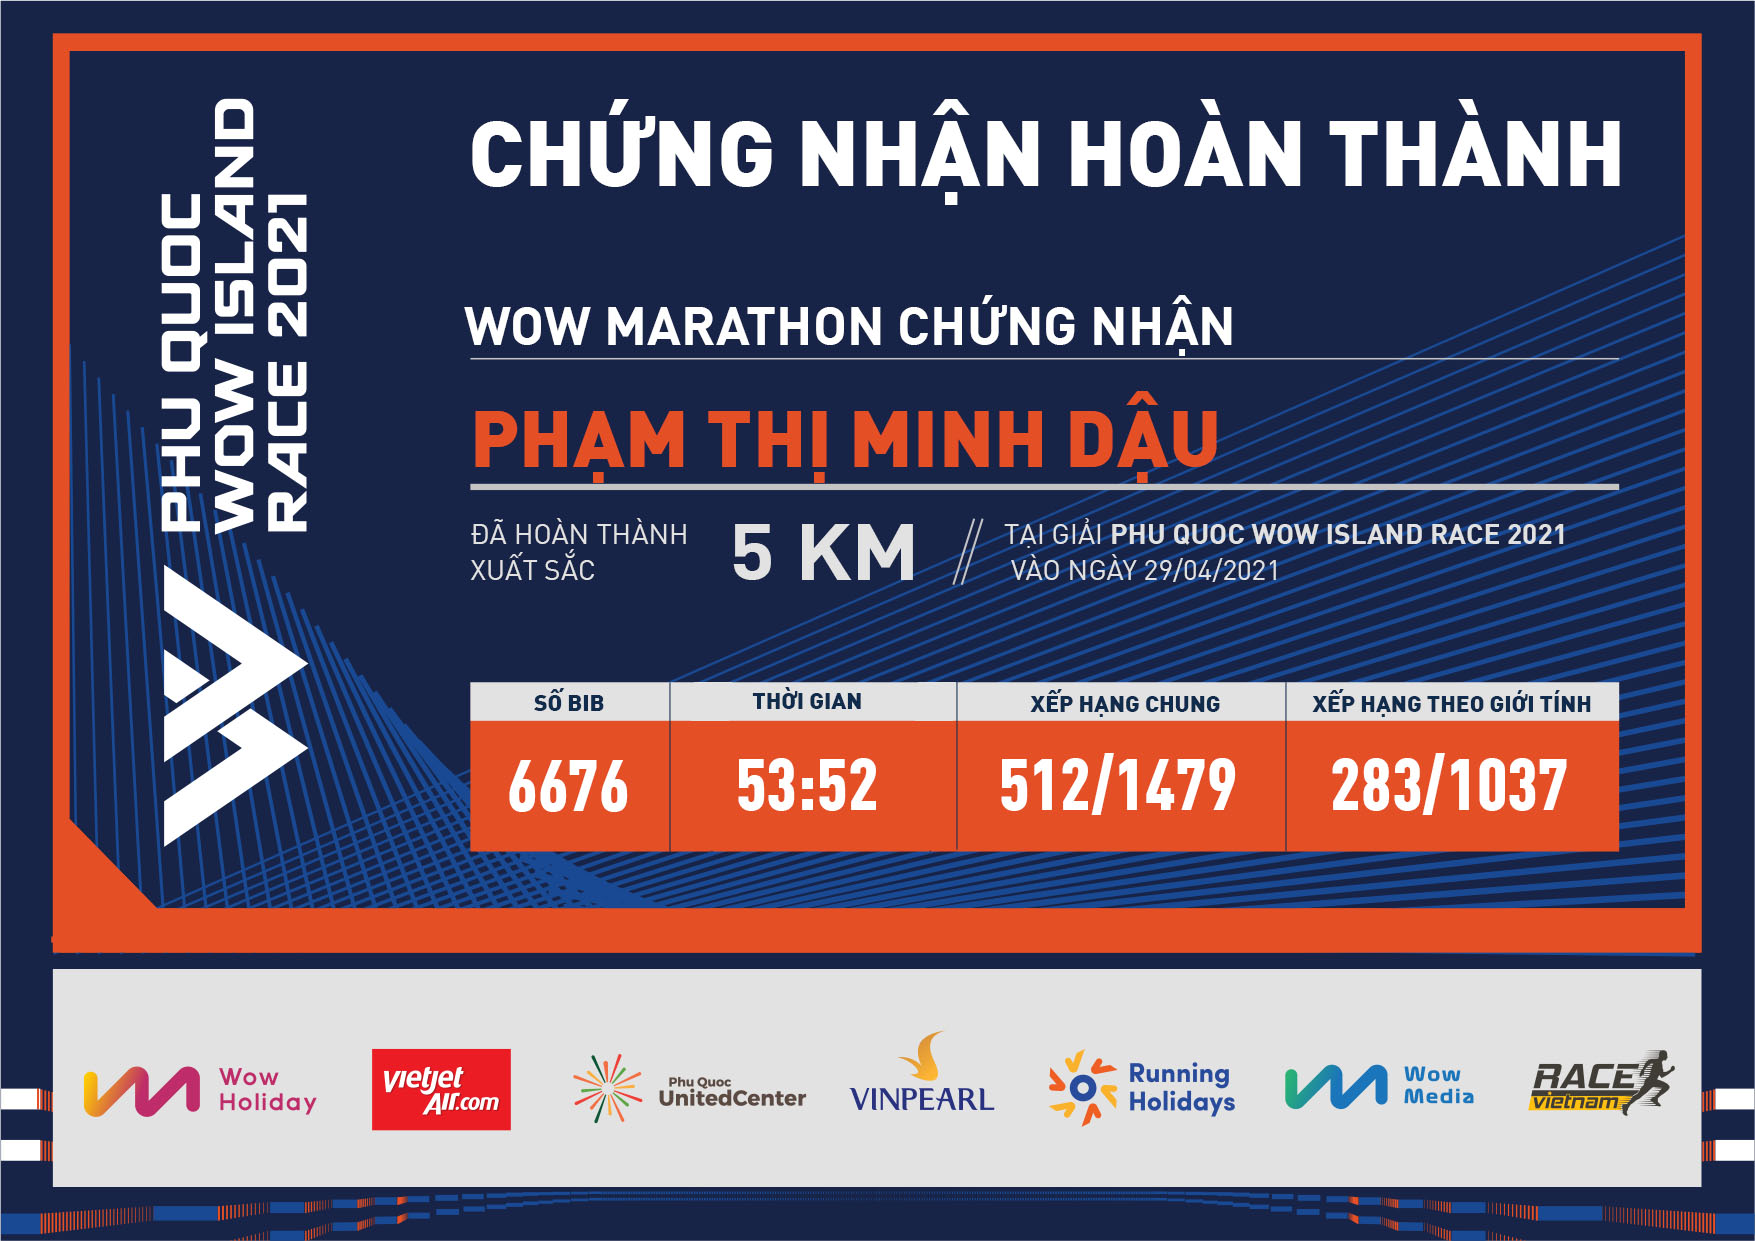 6676 - Phạm Thị Minh Dậu